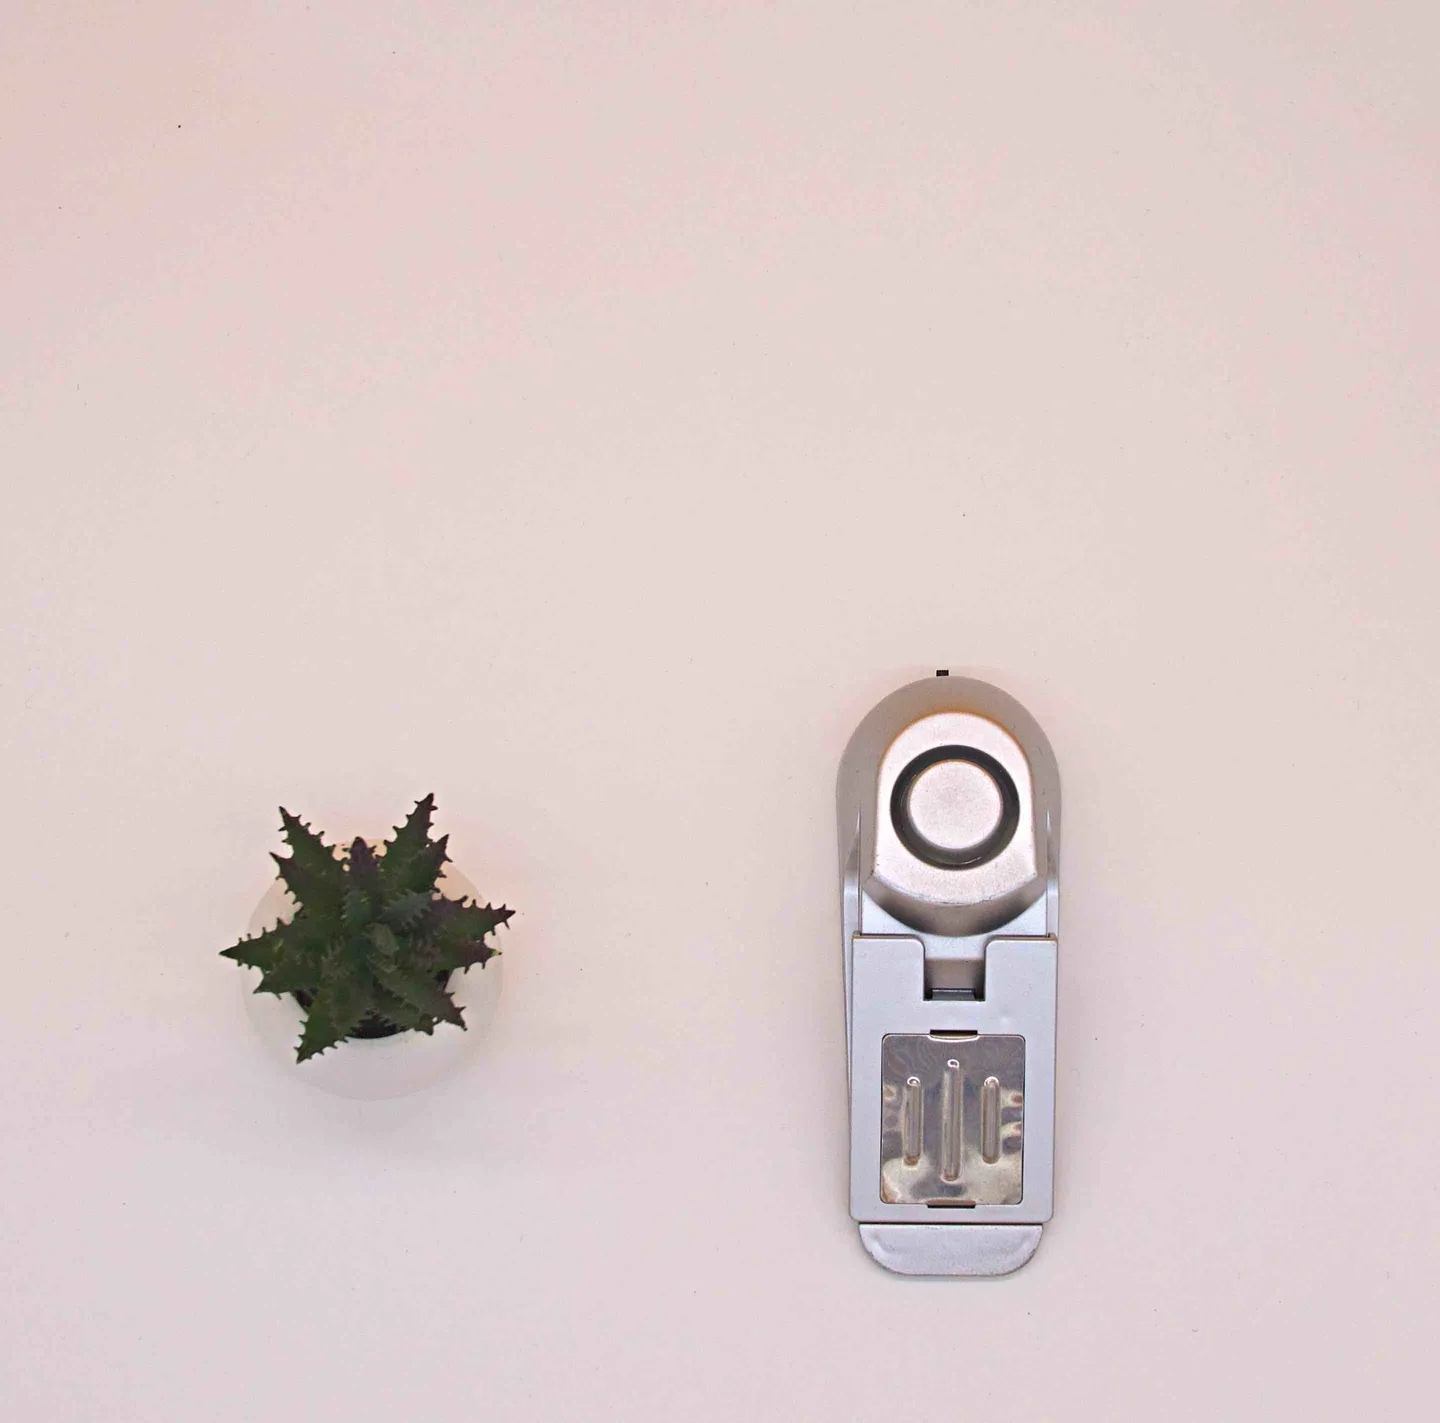 Alarm & Taschenlampe - Türblockierungs-Alarm 120dB... Die einfache und effektive Einbruchsalarme!